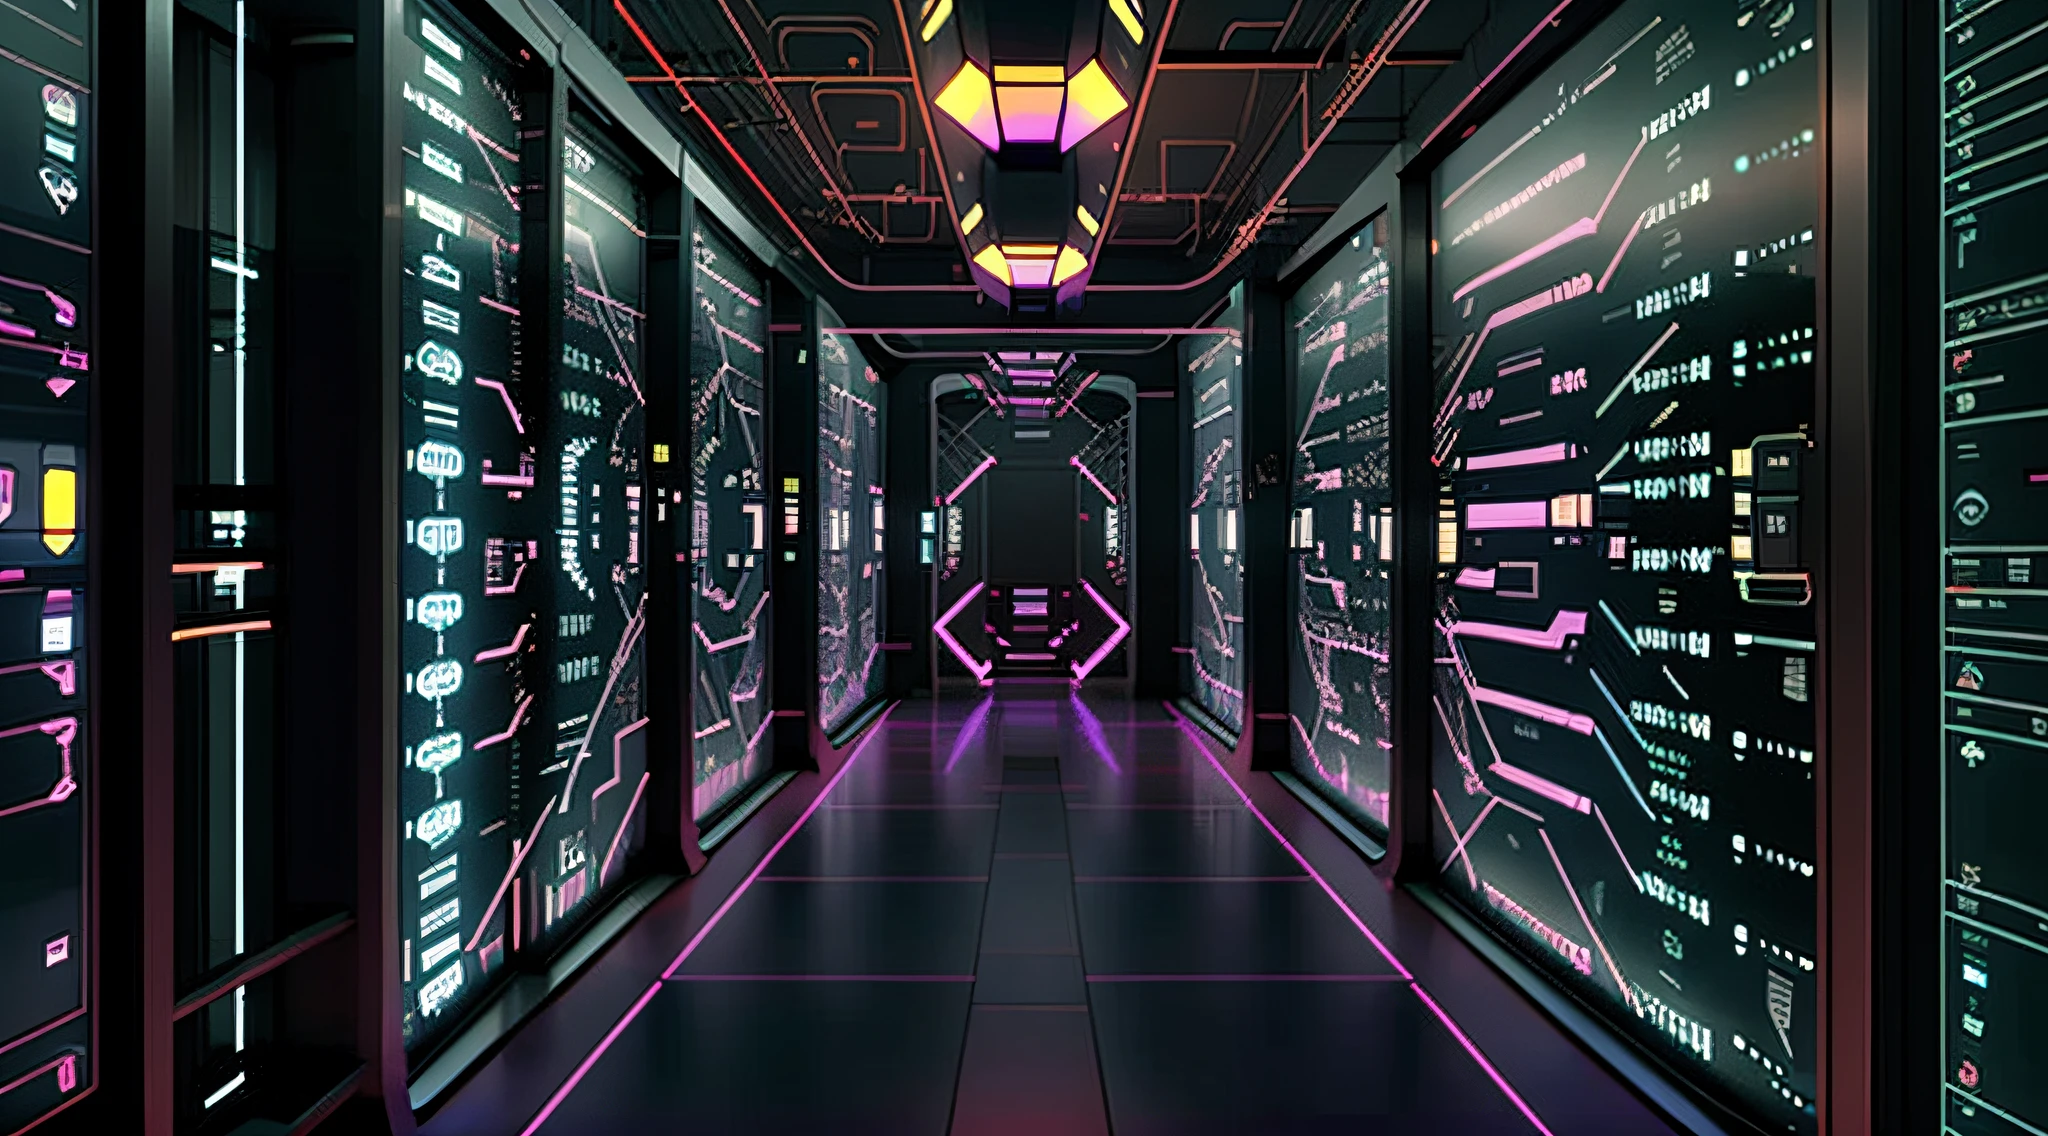 тускло освещенный коридор с рядами данных и компьютерными экранами, фон — серверная комната данных, взлом мейнфрейма, киберпространство, в реалистичном дата-центре, 3840x2160, 3840 х 2160, фон коридора космического корабля, киберархитектура, сюрреалистическое киберпространство, в подробном дата-центре